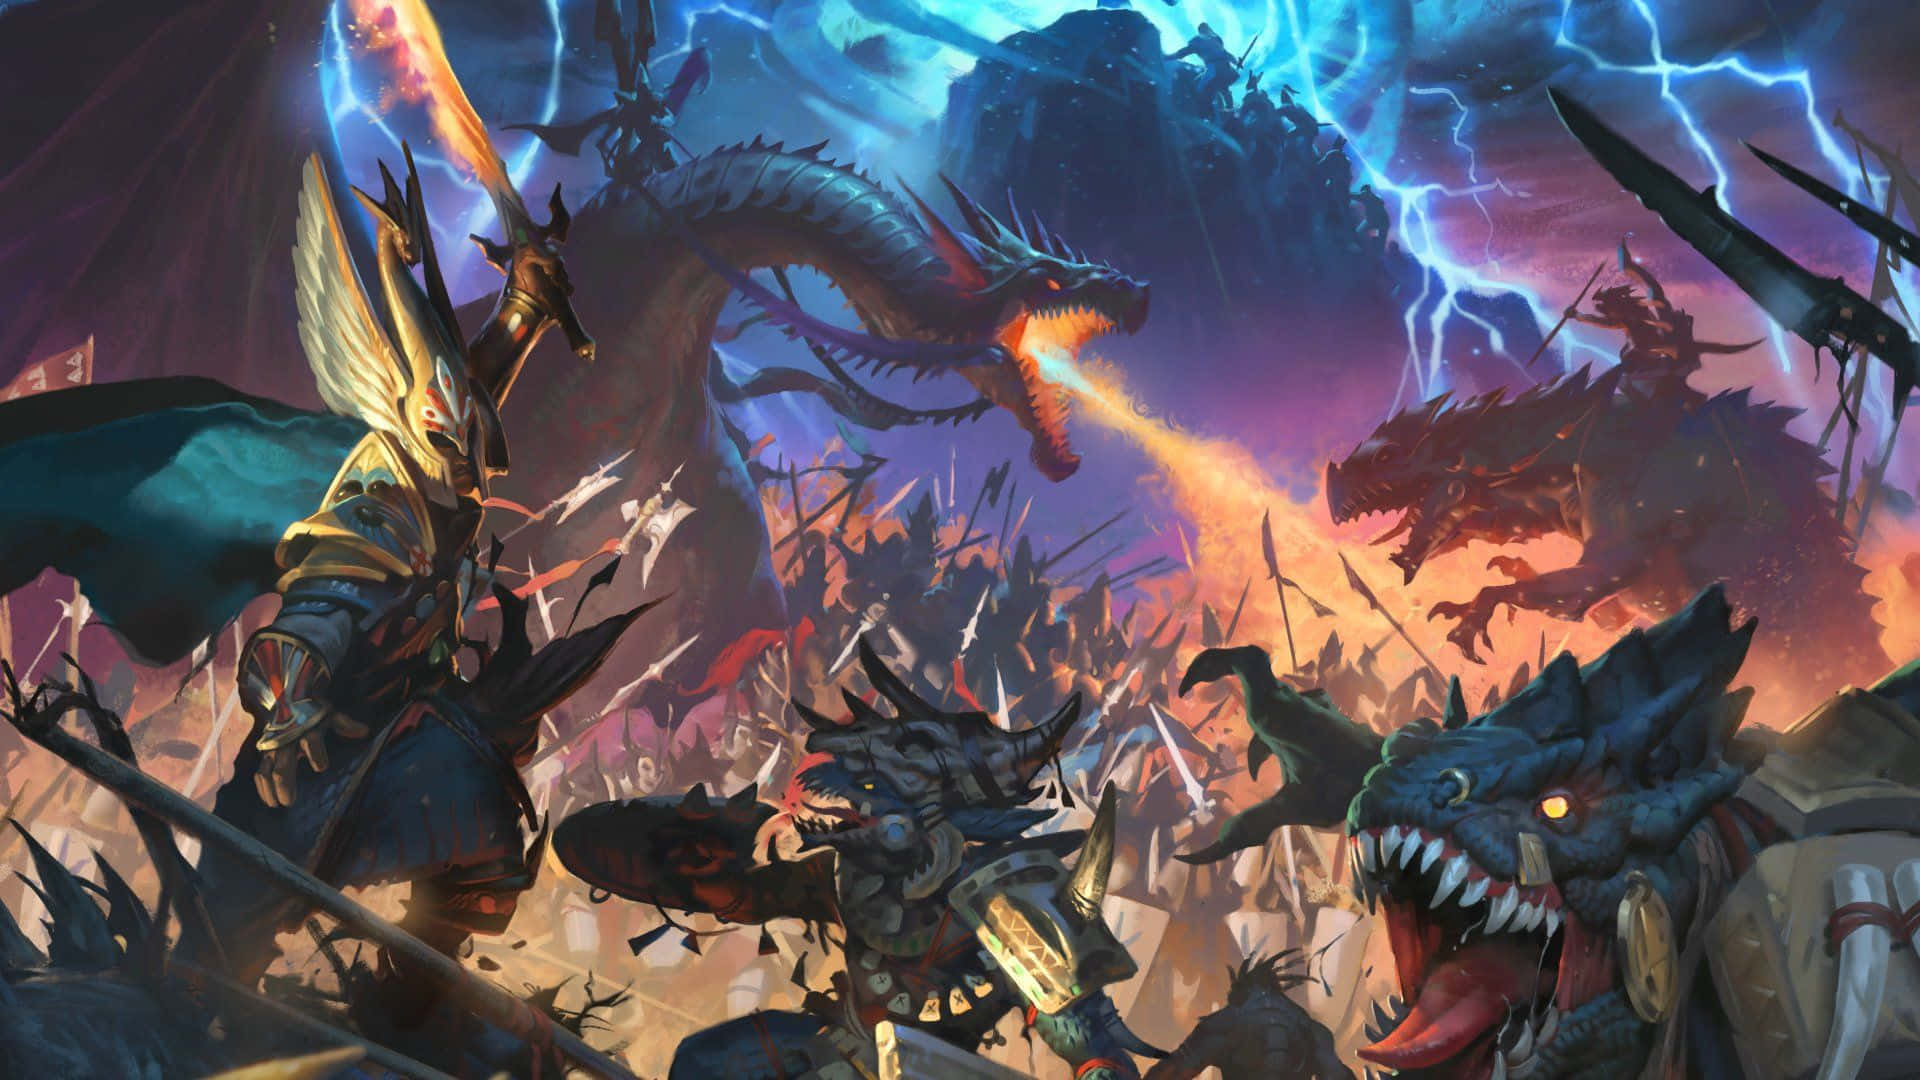 Erövrafantasivärlden Med Total War: Warhammer